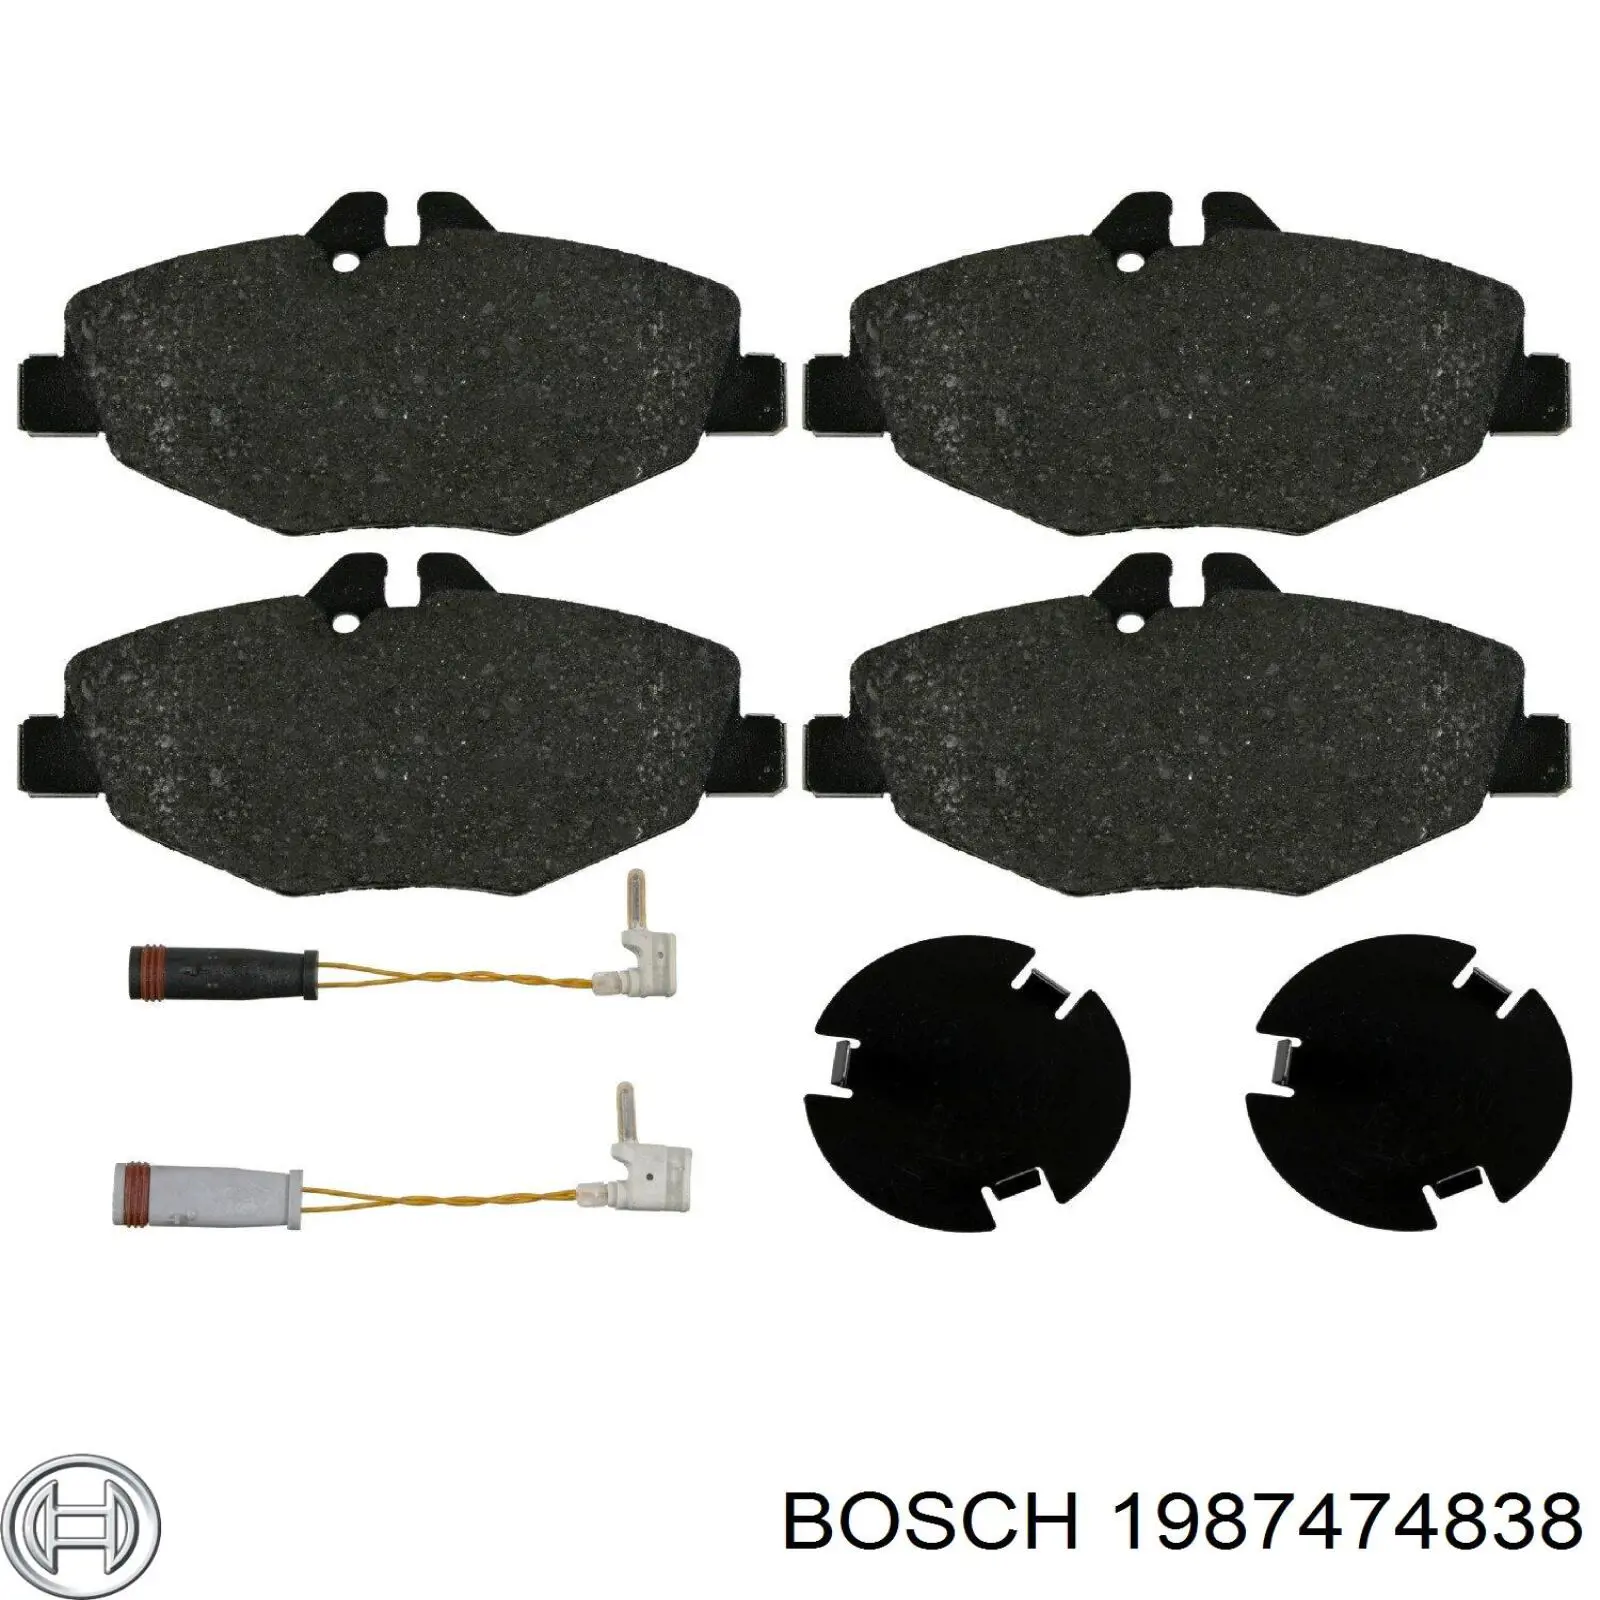 1987474838 Bosch 